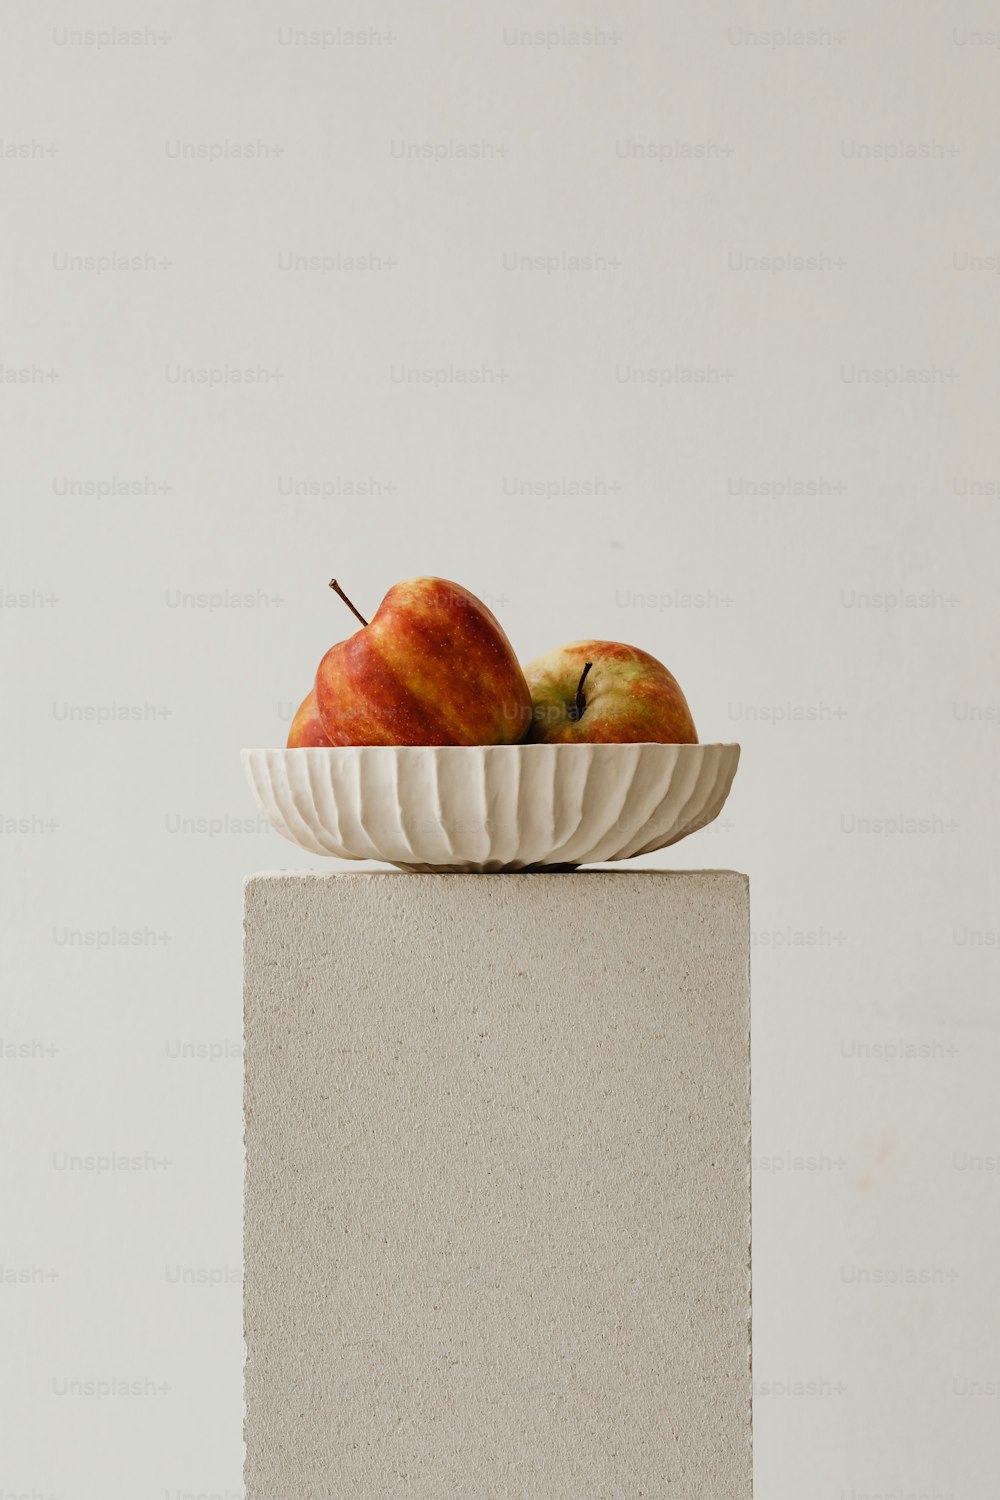 Zwei Äpfel in einer weißen Schale auf einem Sockel